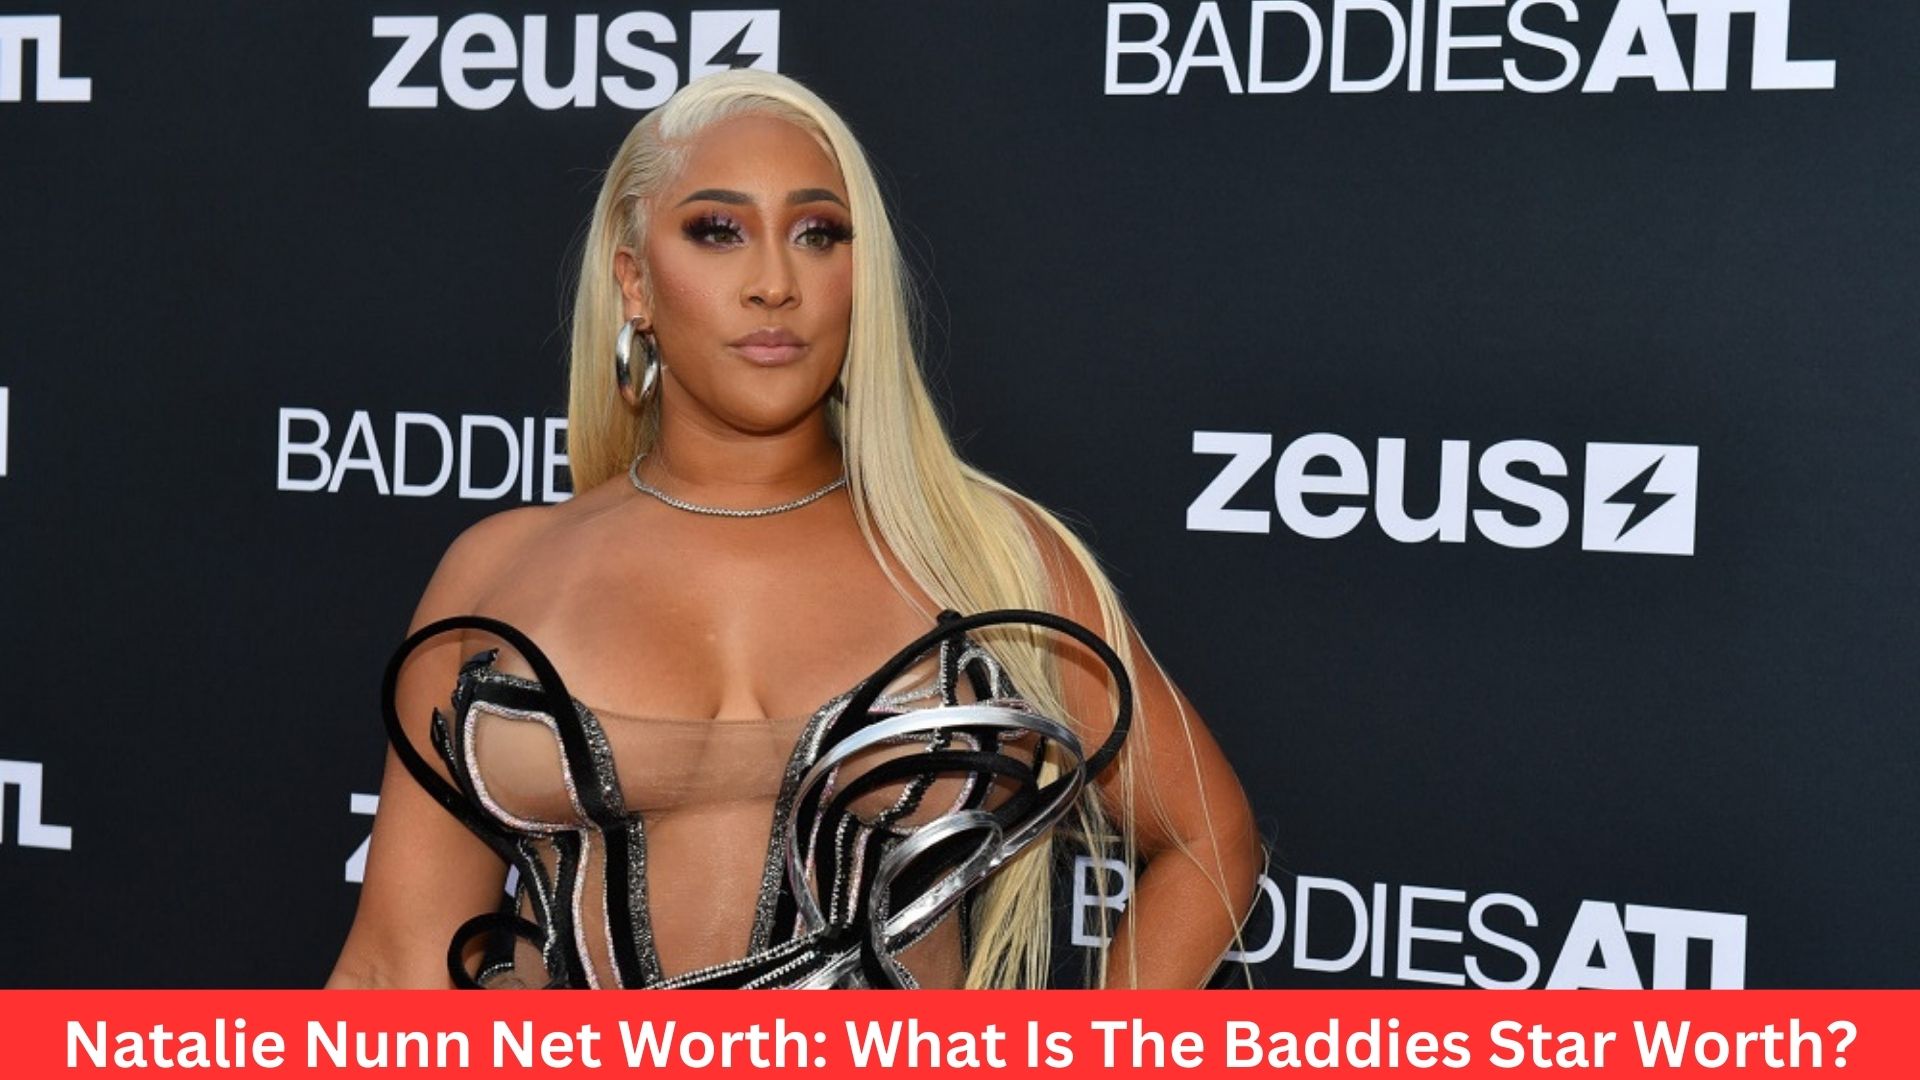 Natalie Nunn Net Worth: What Is The Baddies Star Worth?